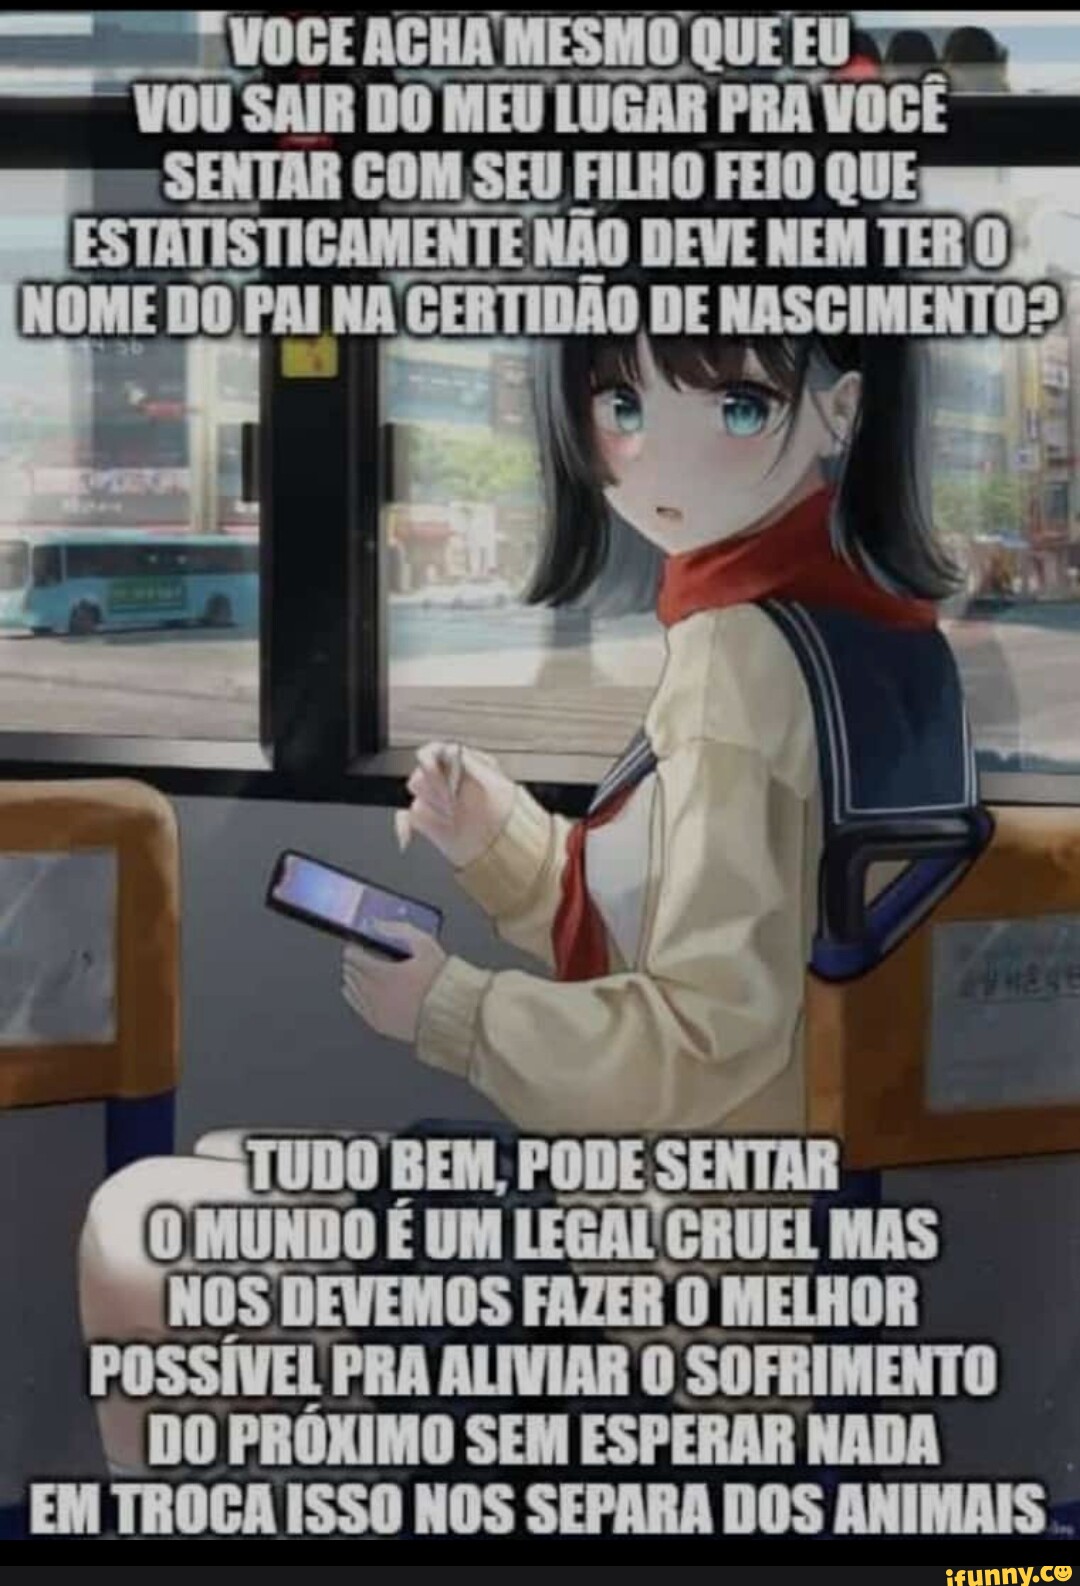 imagens n podem causar dor* imagem: Animes Brasil apresenta falhas  continuamente Fechar app EB Enviar feedback - iFunny Brazil